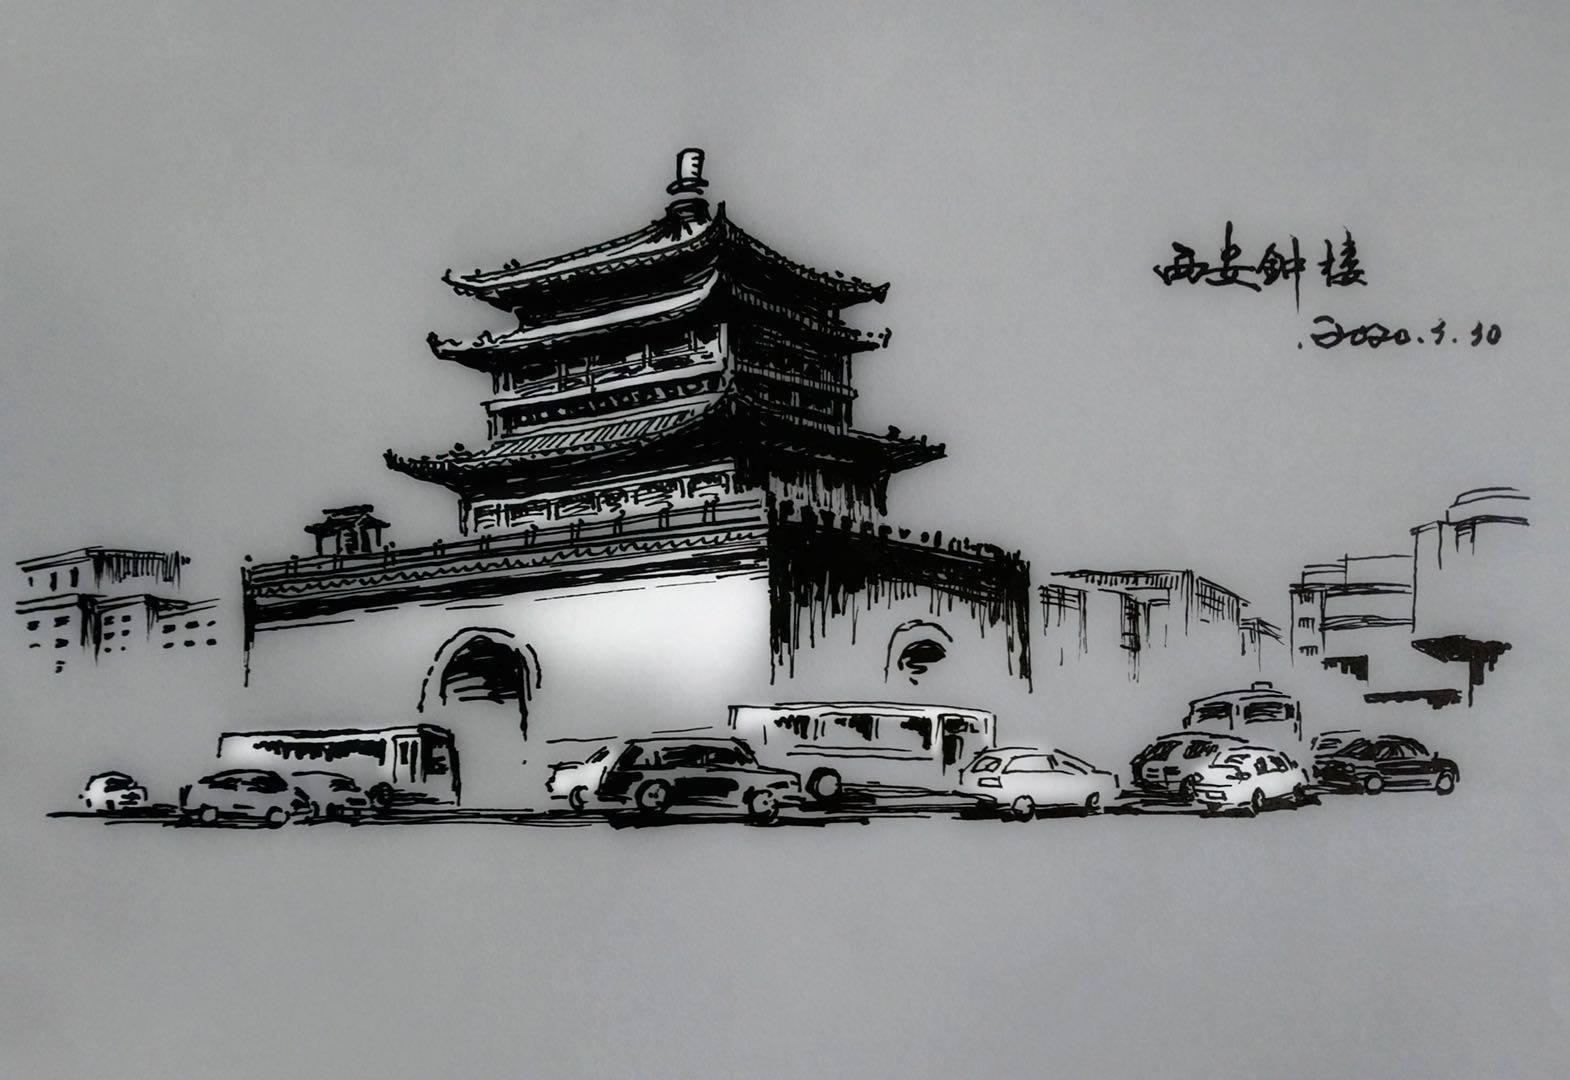 西安钟楼位于西安市中心,明城墙内东西南北四条大街的交汇处,是中国